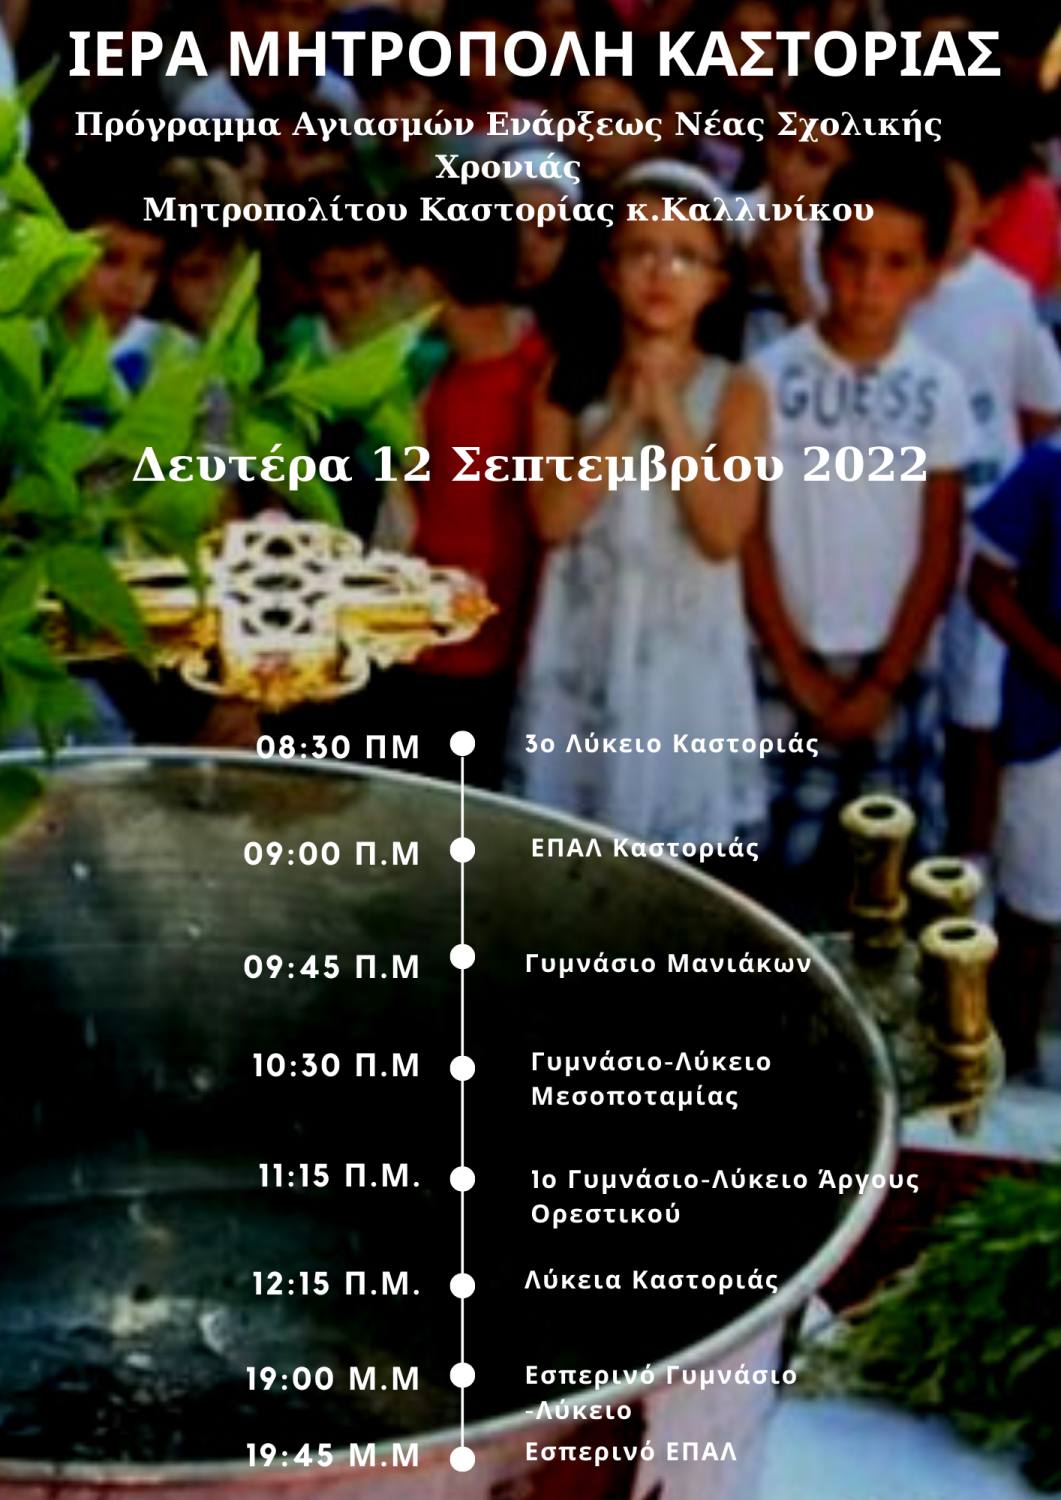 Πρόγραμμα Αγιασμών Eνάρξεως Νέας Σχολική Χρονιάς από τον Σεβ. Μητροπολίτη Καστορίας κ.Καλλίνικο